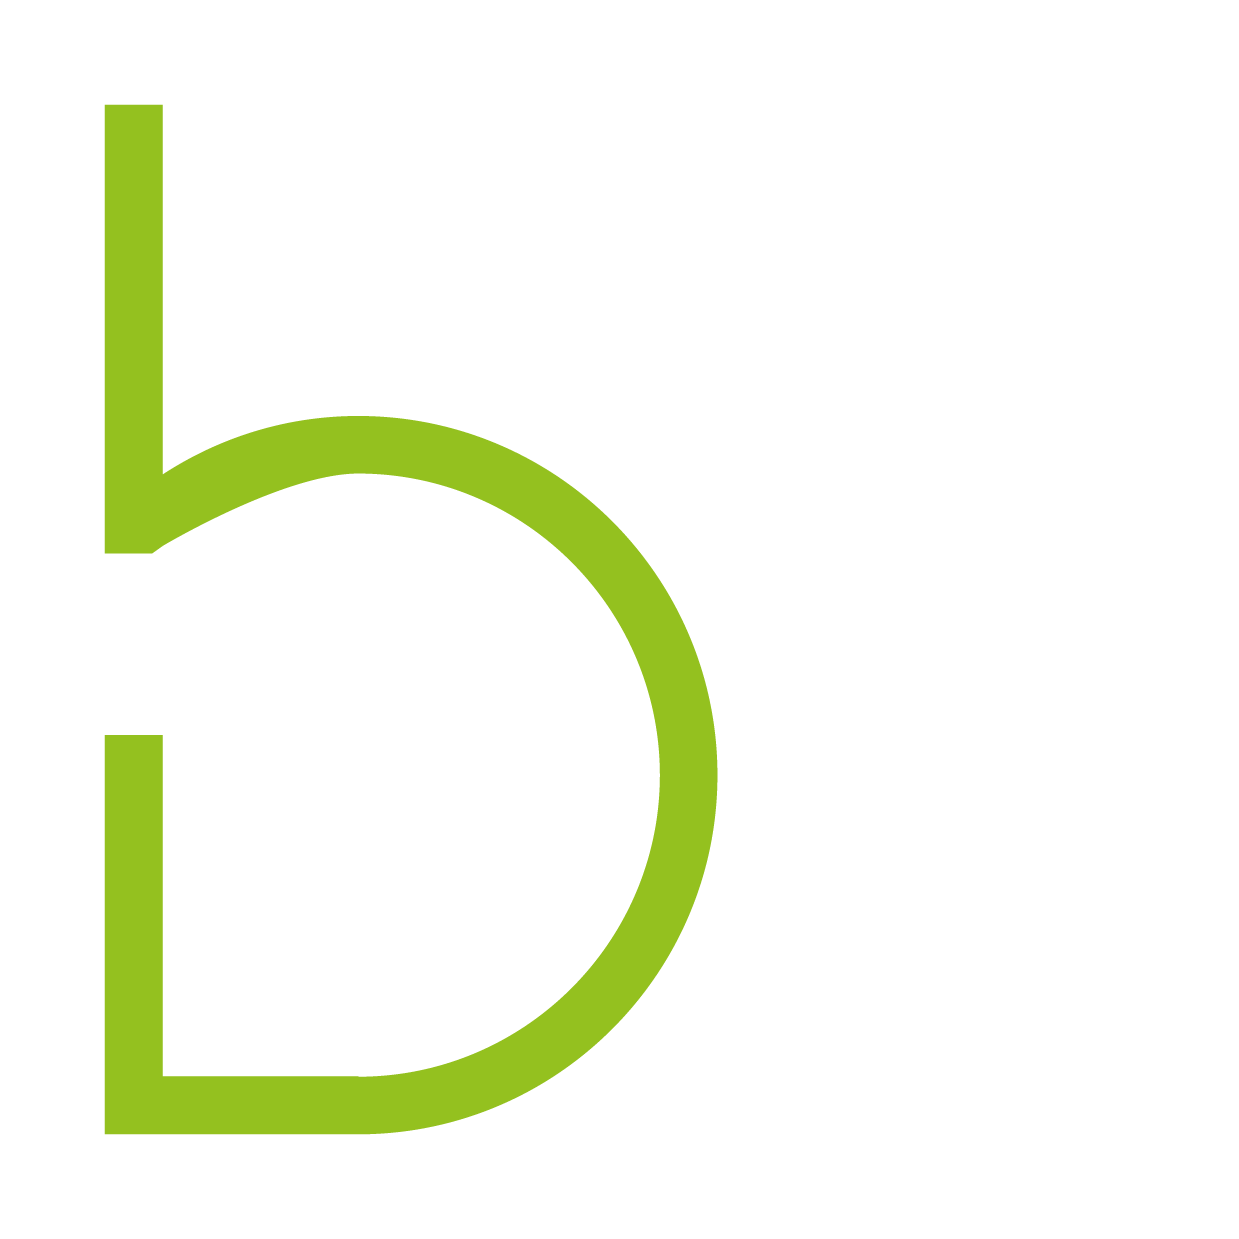 Bacher Architekt Logo